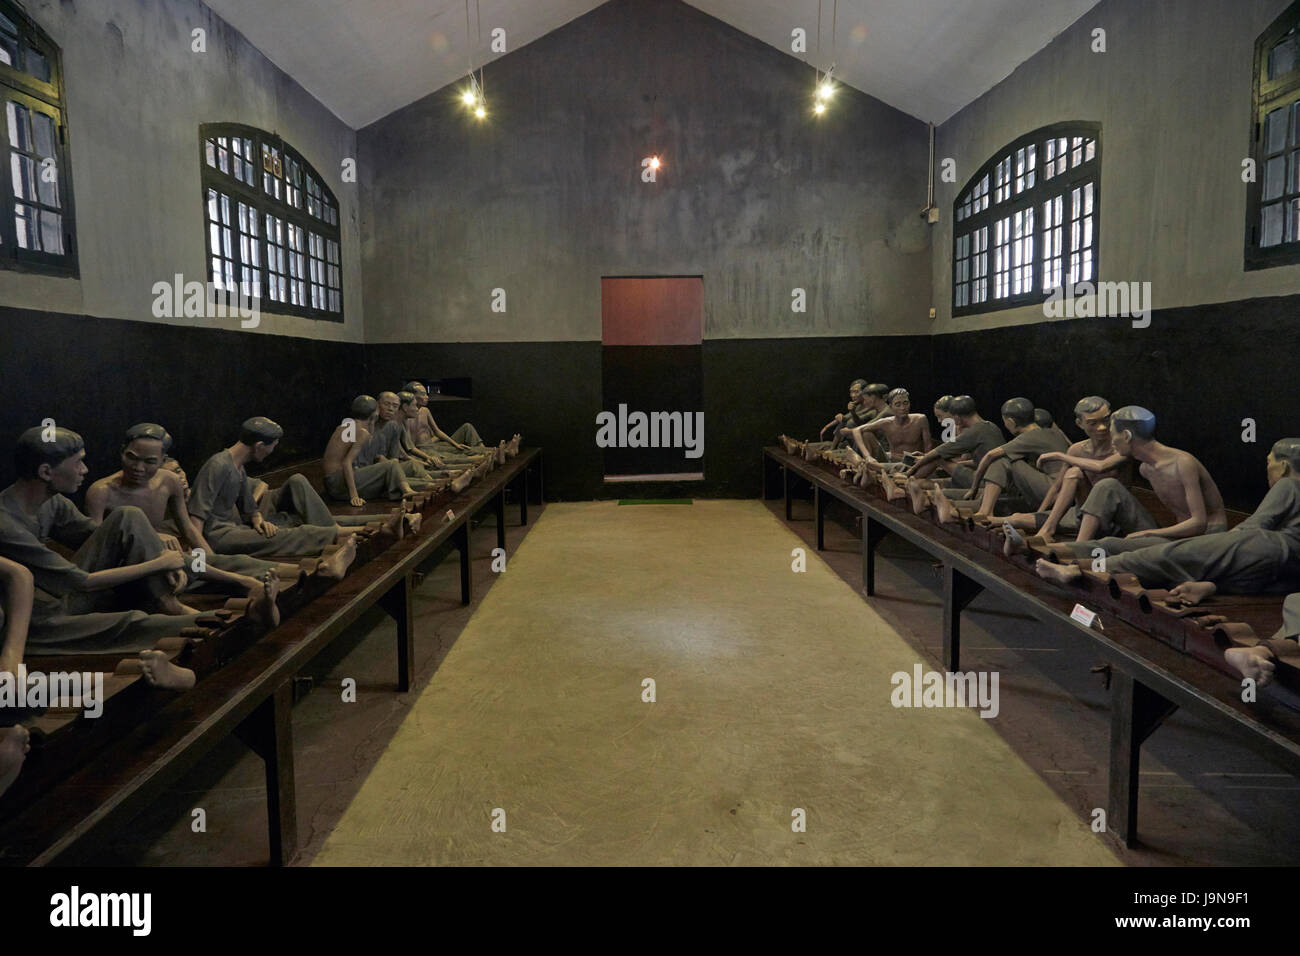 Modèle grandeur nature des prisonniers enchaînés dans la cellule, Musée de la prison Hoa Lo, (Aka Hanoi Hilton), Hanoi, Vietnam Banque D'Images